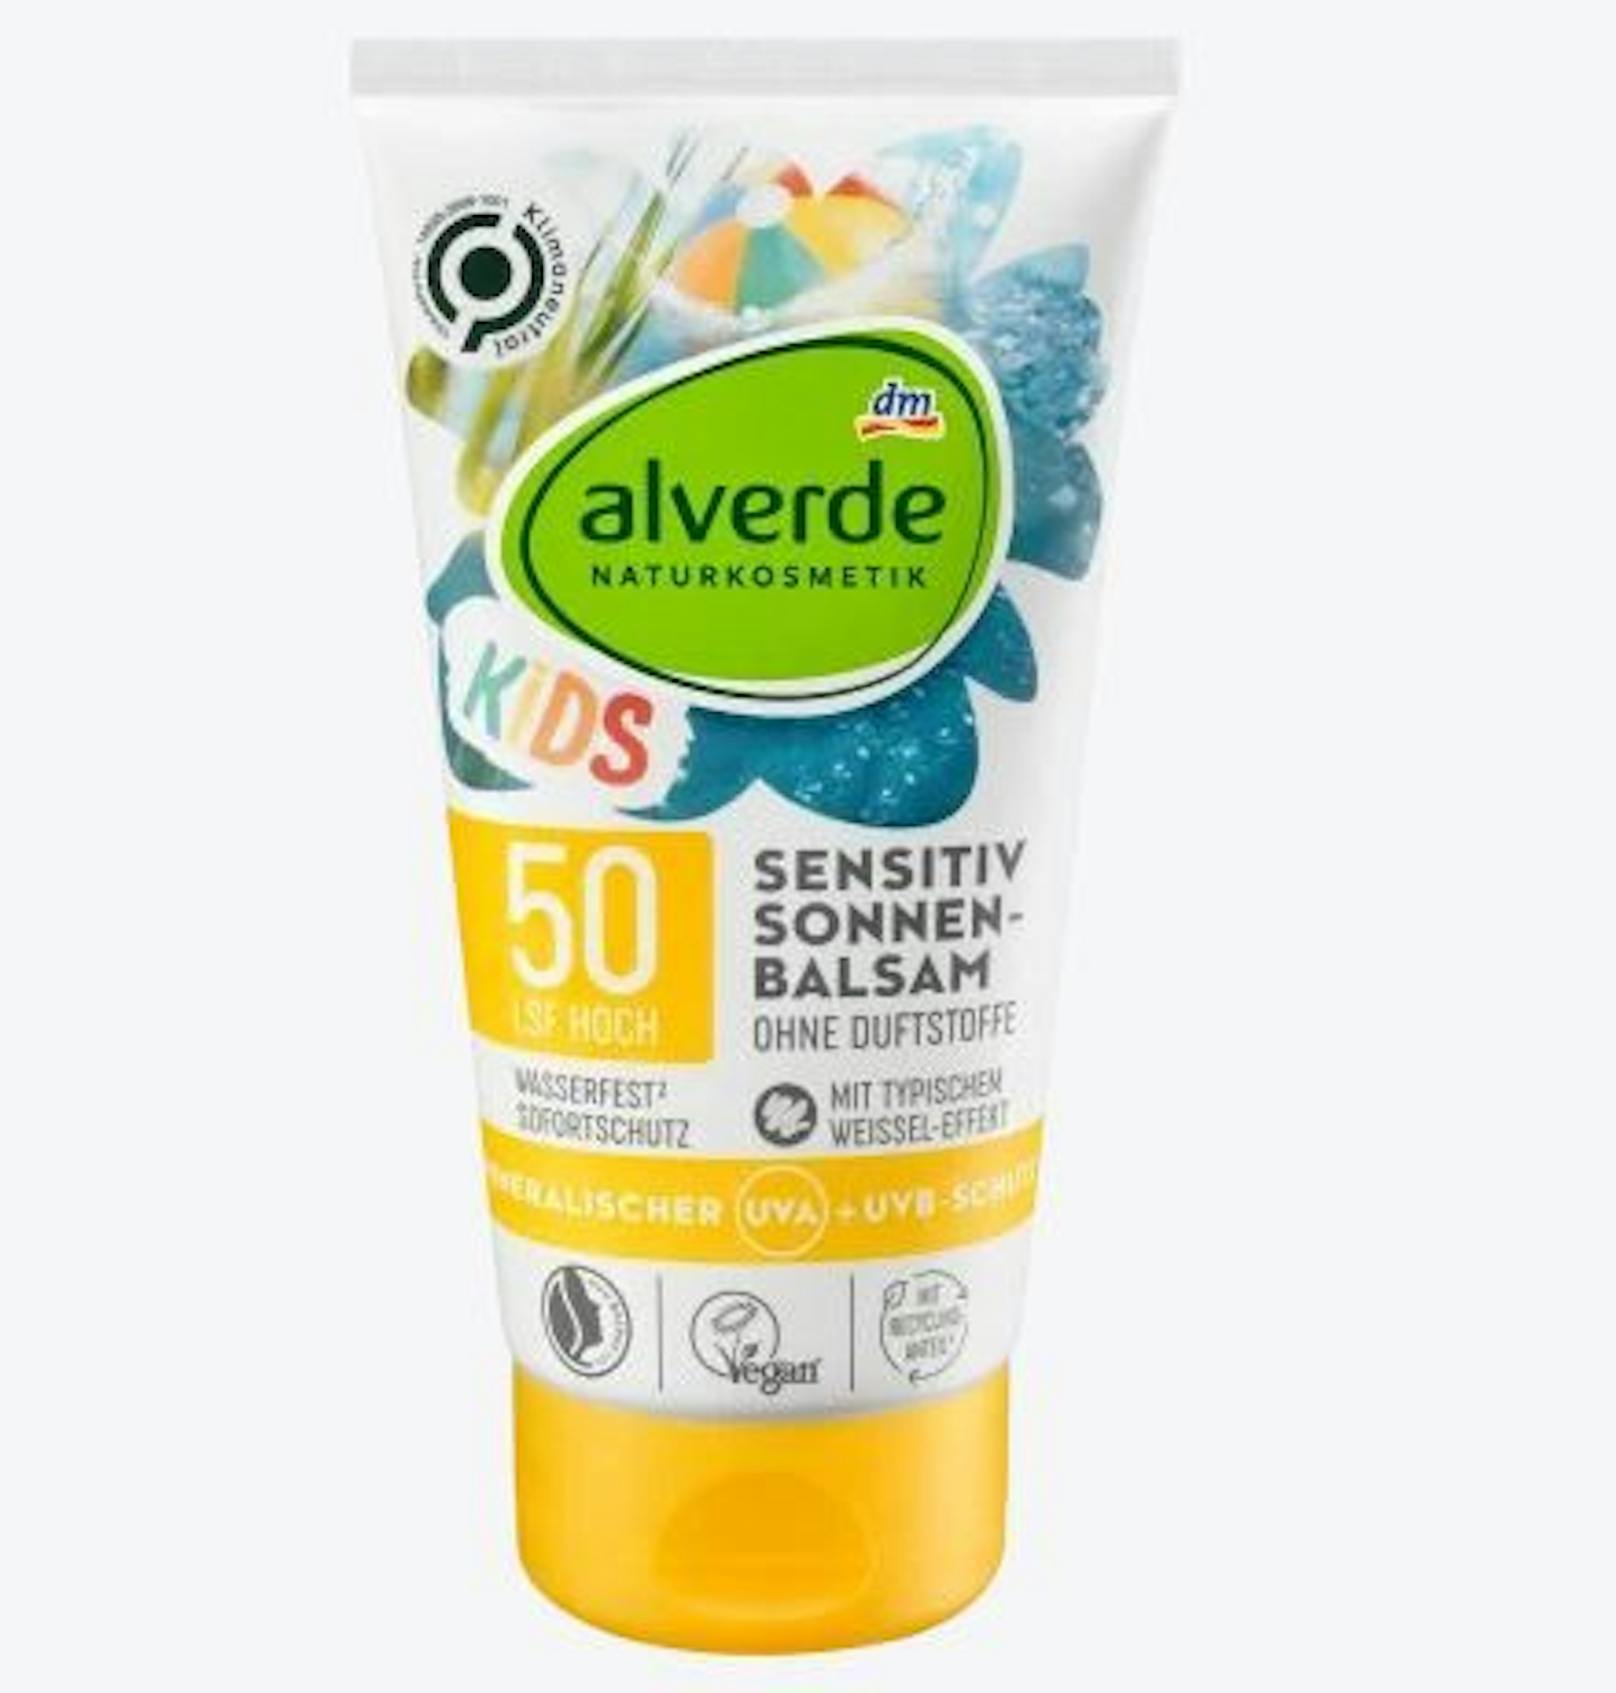 Alverde ist die zertifizierte Naturkosmetik-Marke von dm. Daher schützt dieser Sonnenbalsam mit natürlichen Filtern (Titandioxid) und ist daher umweltfreundlich für Meer, See und seine Bewohner.150ml für 6,95 Euro.